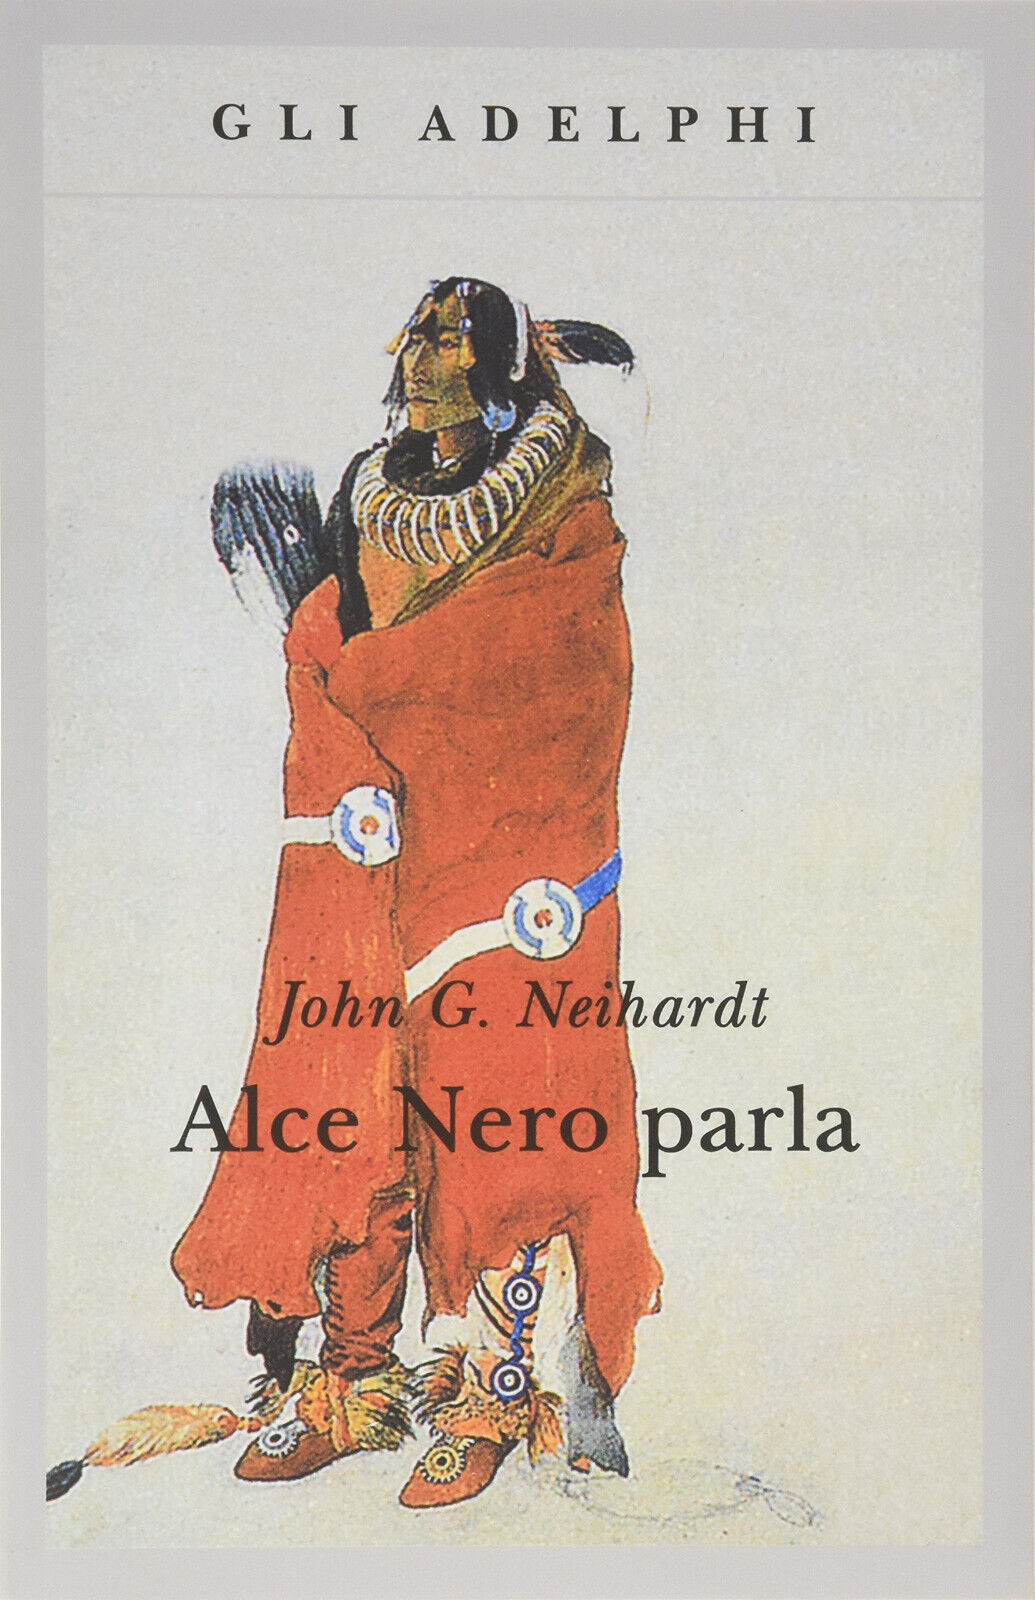 Alce Nero parla. Vita di uno stregone dei sioux Oglala - Adelphi, 1990